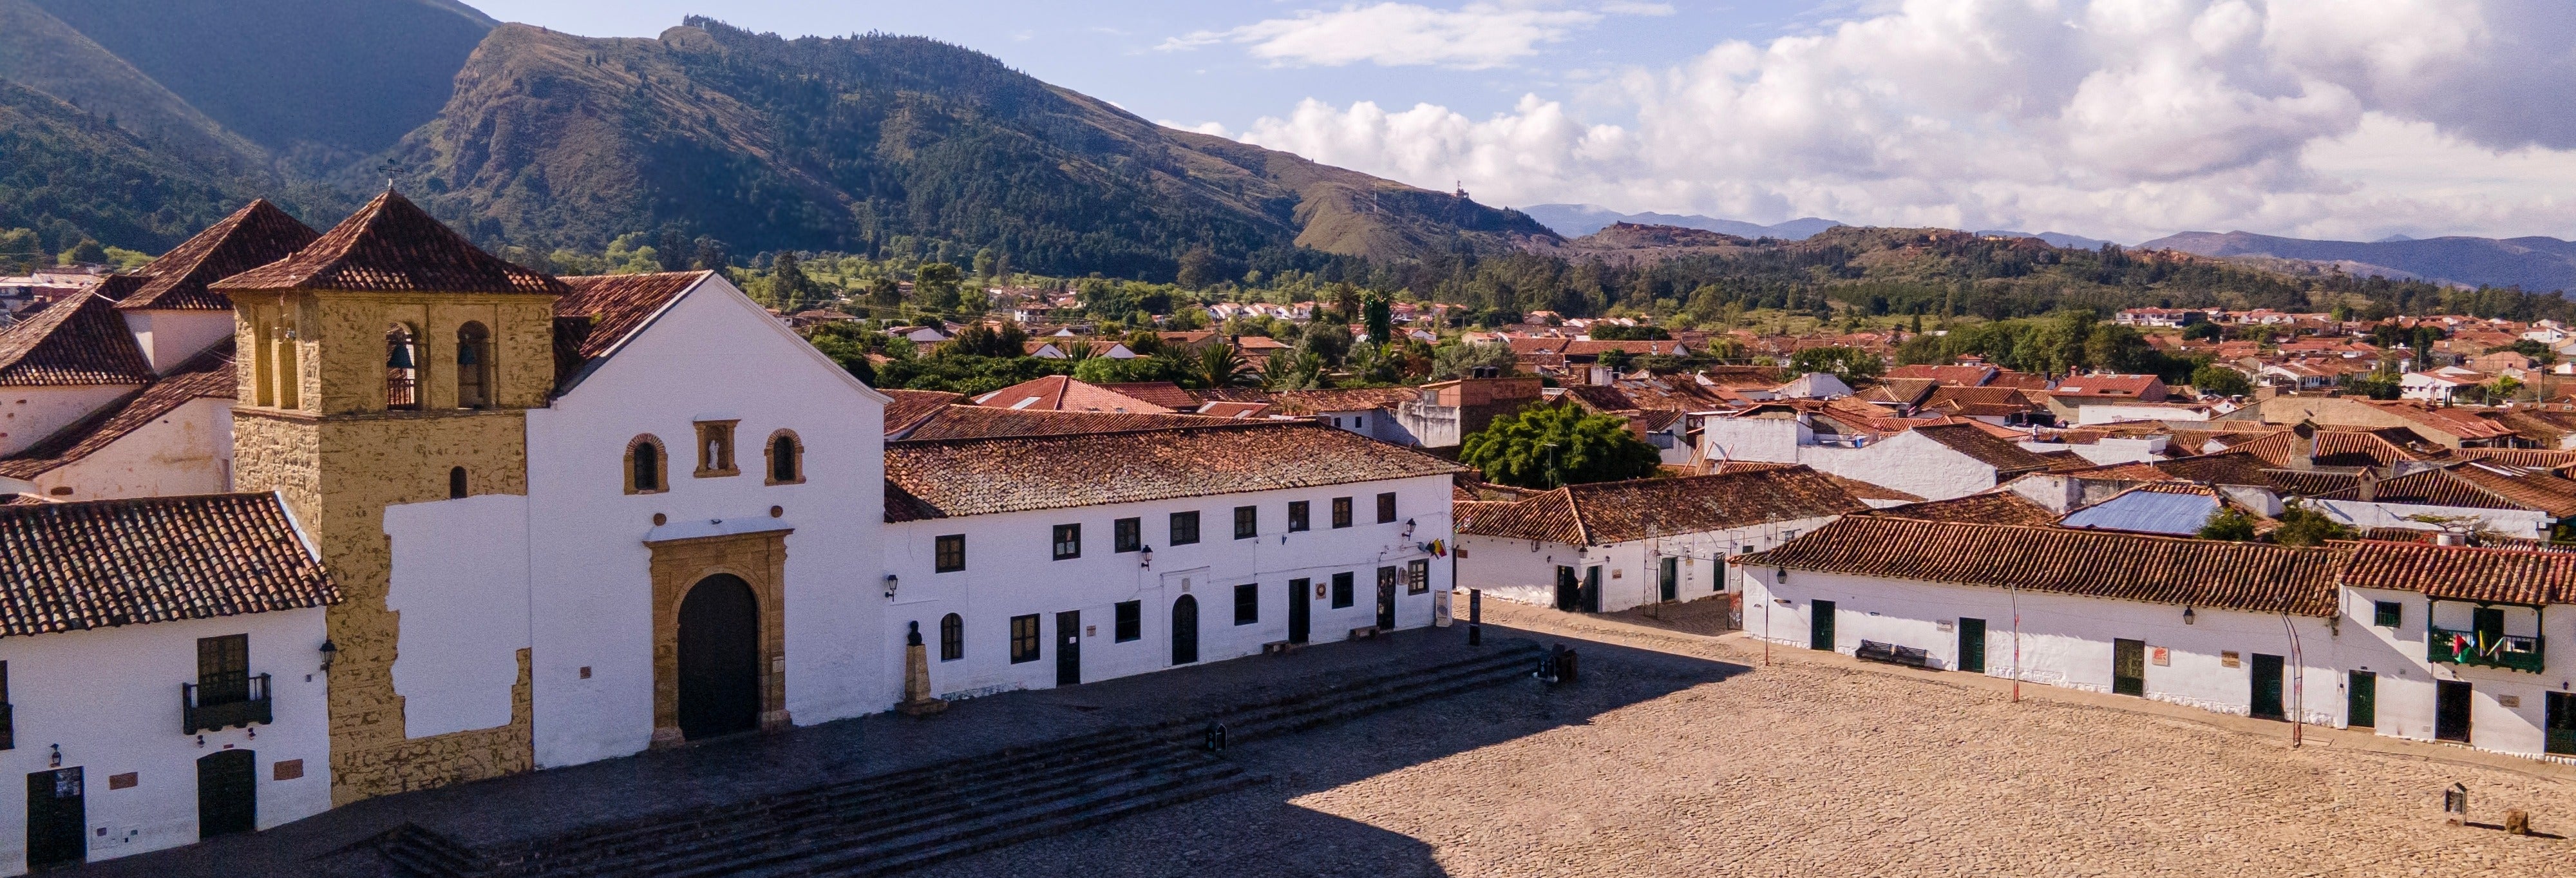 Excursión a Villa de Leyva desde Bogotá